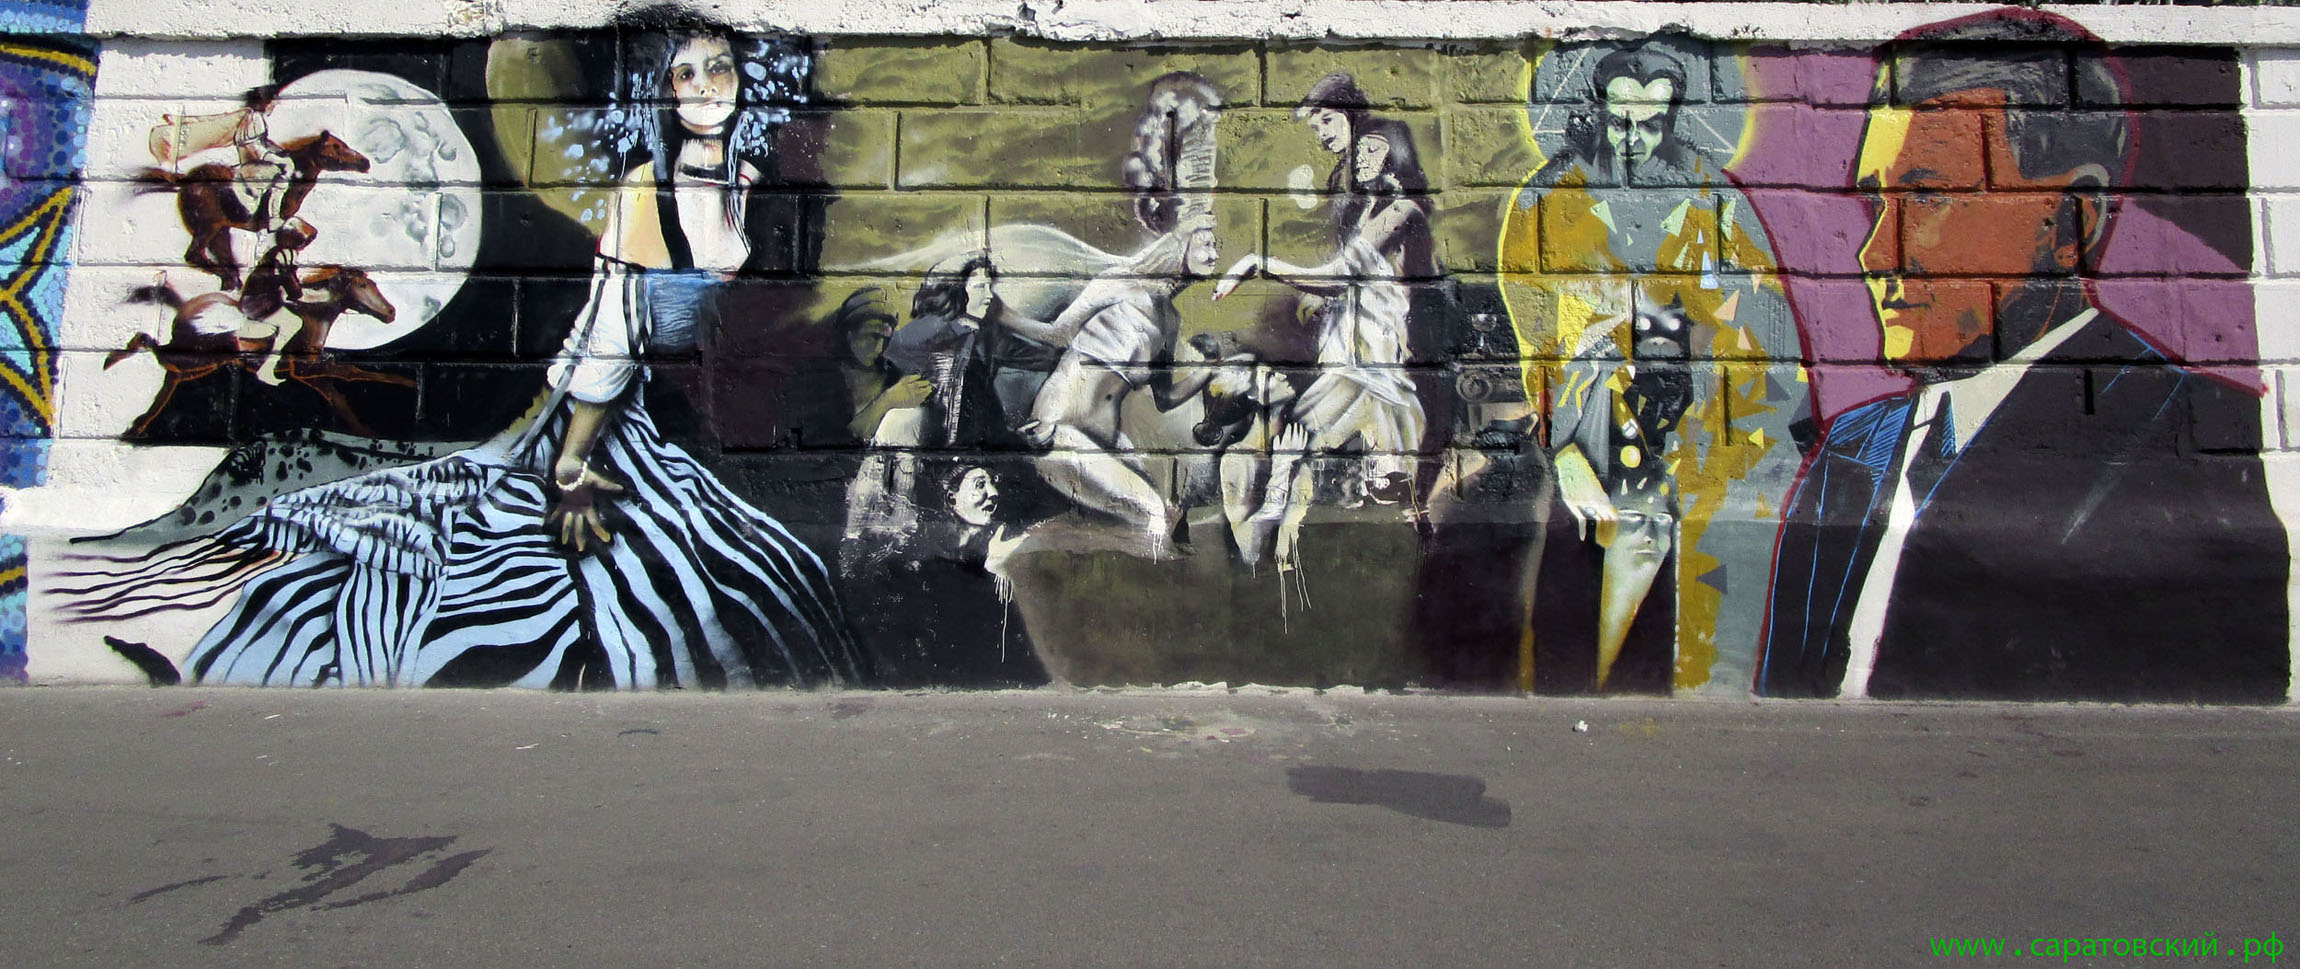 Saratov waterfront graffiti: Mikhail Bulgakov and Saratov, Russia